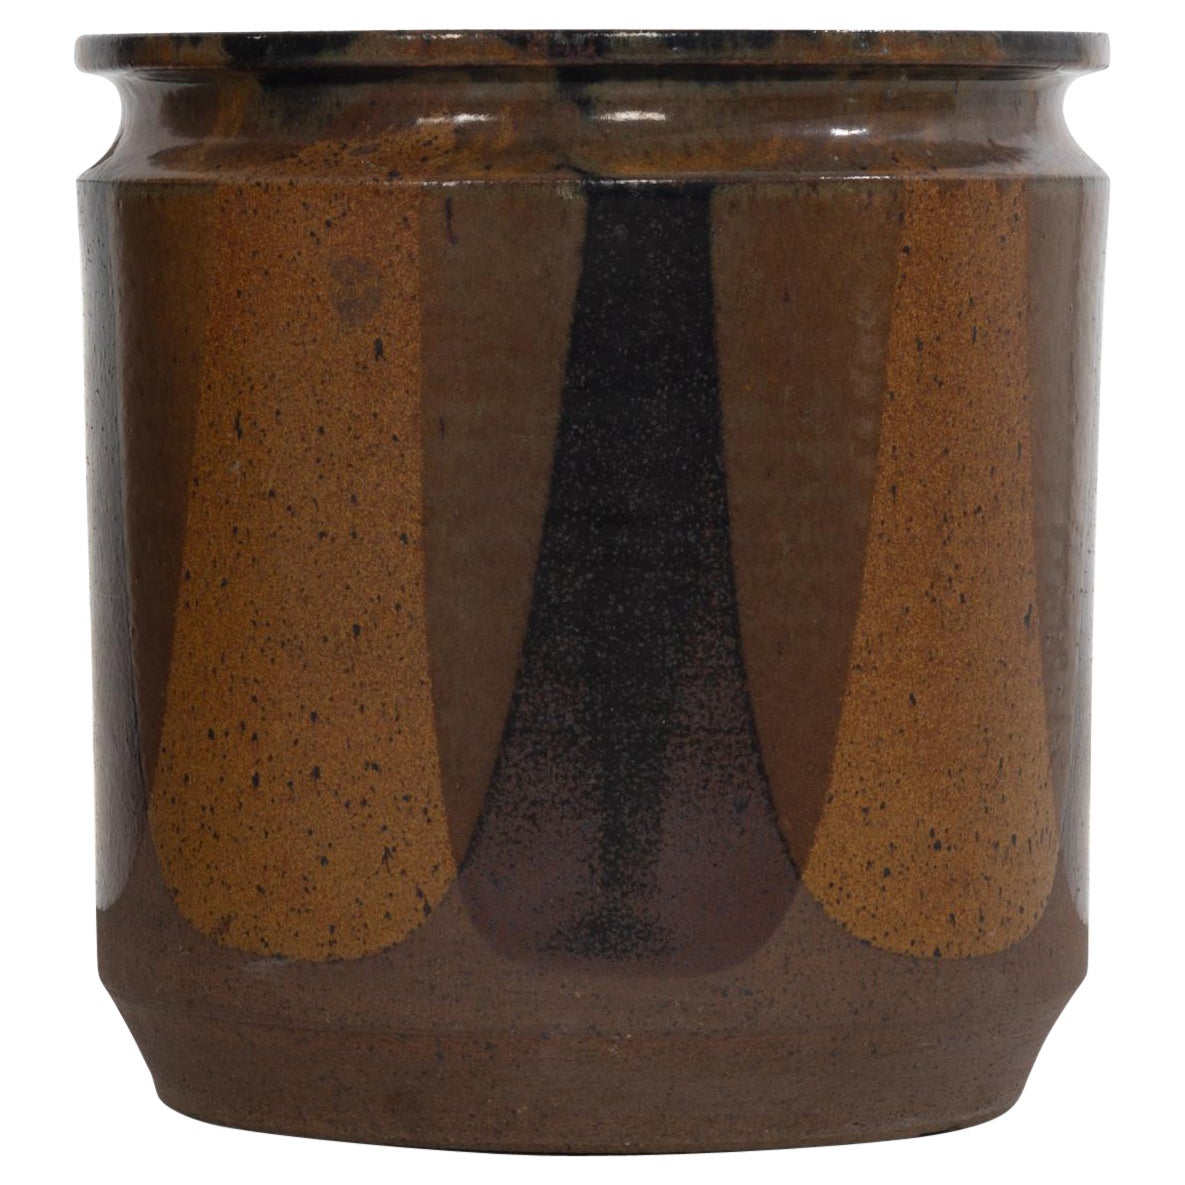 David Cressy Flamed Glaze Cylinder Planter by Earthgender, 1965